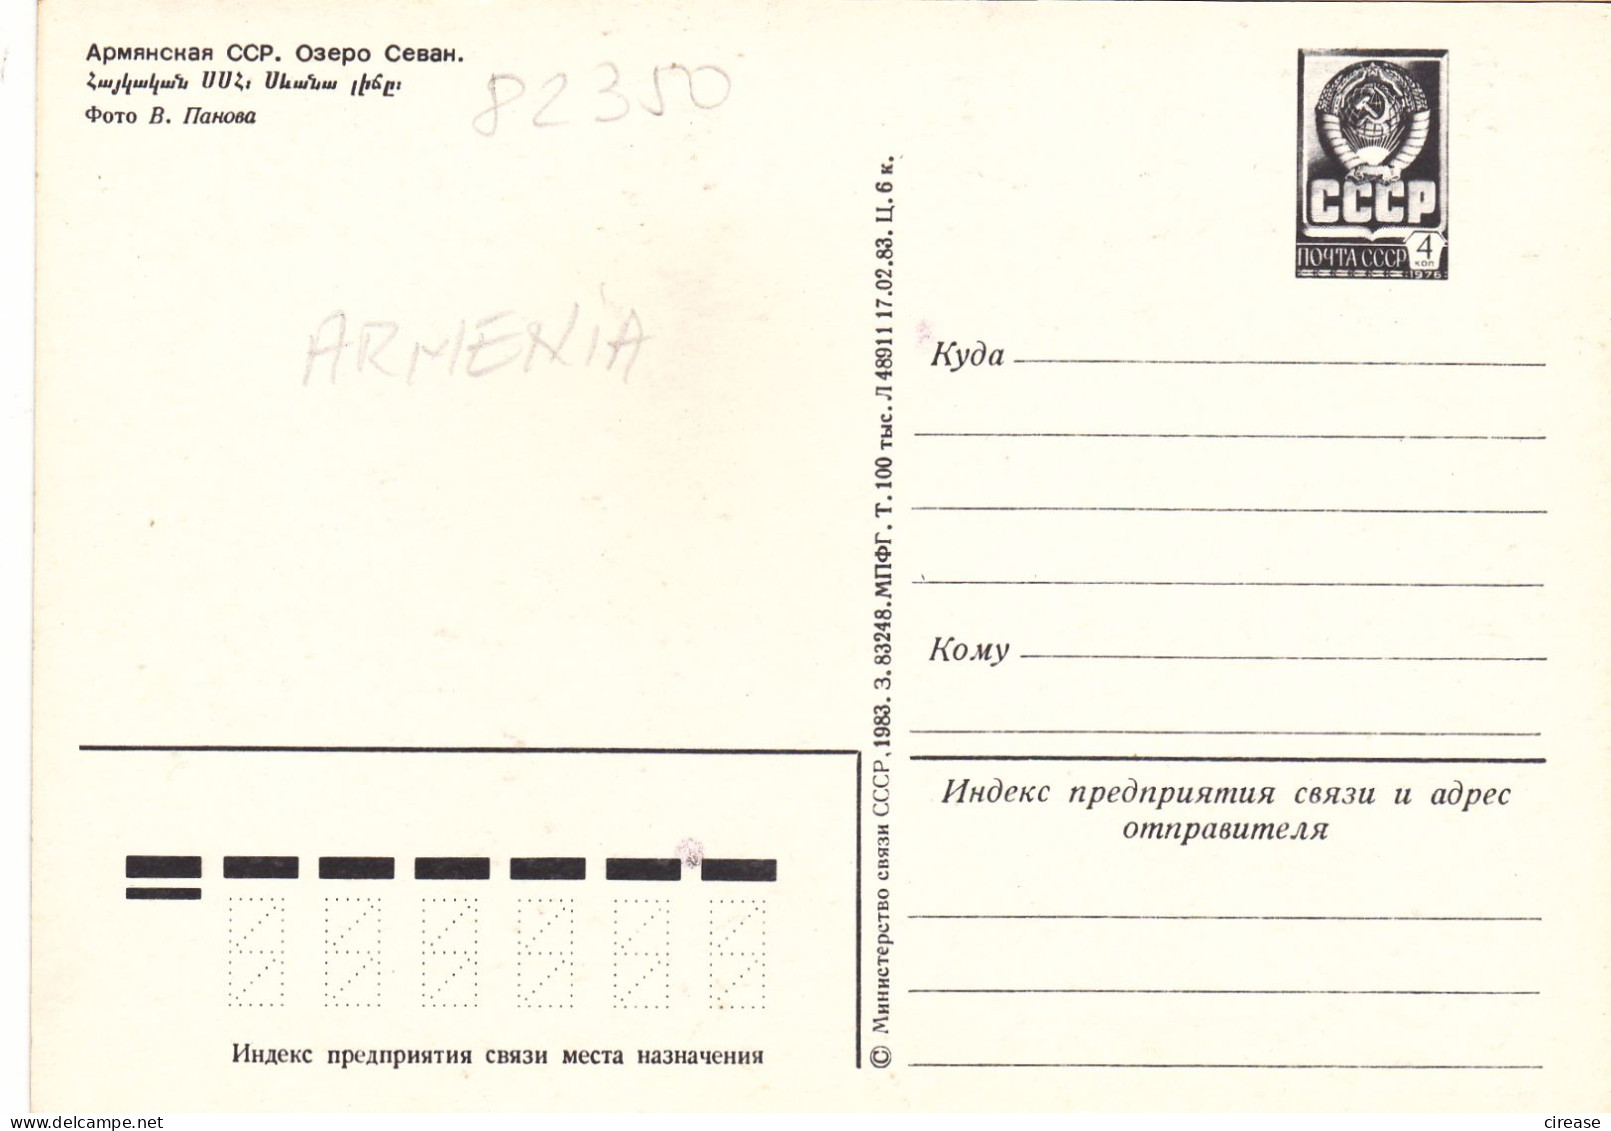 ARMENIA RUSSIA CCCP URSS  POSTAL STATIONERY  1983 - Briefe U. Dokumente